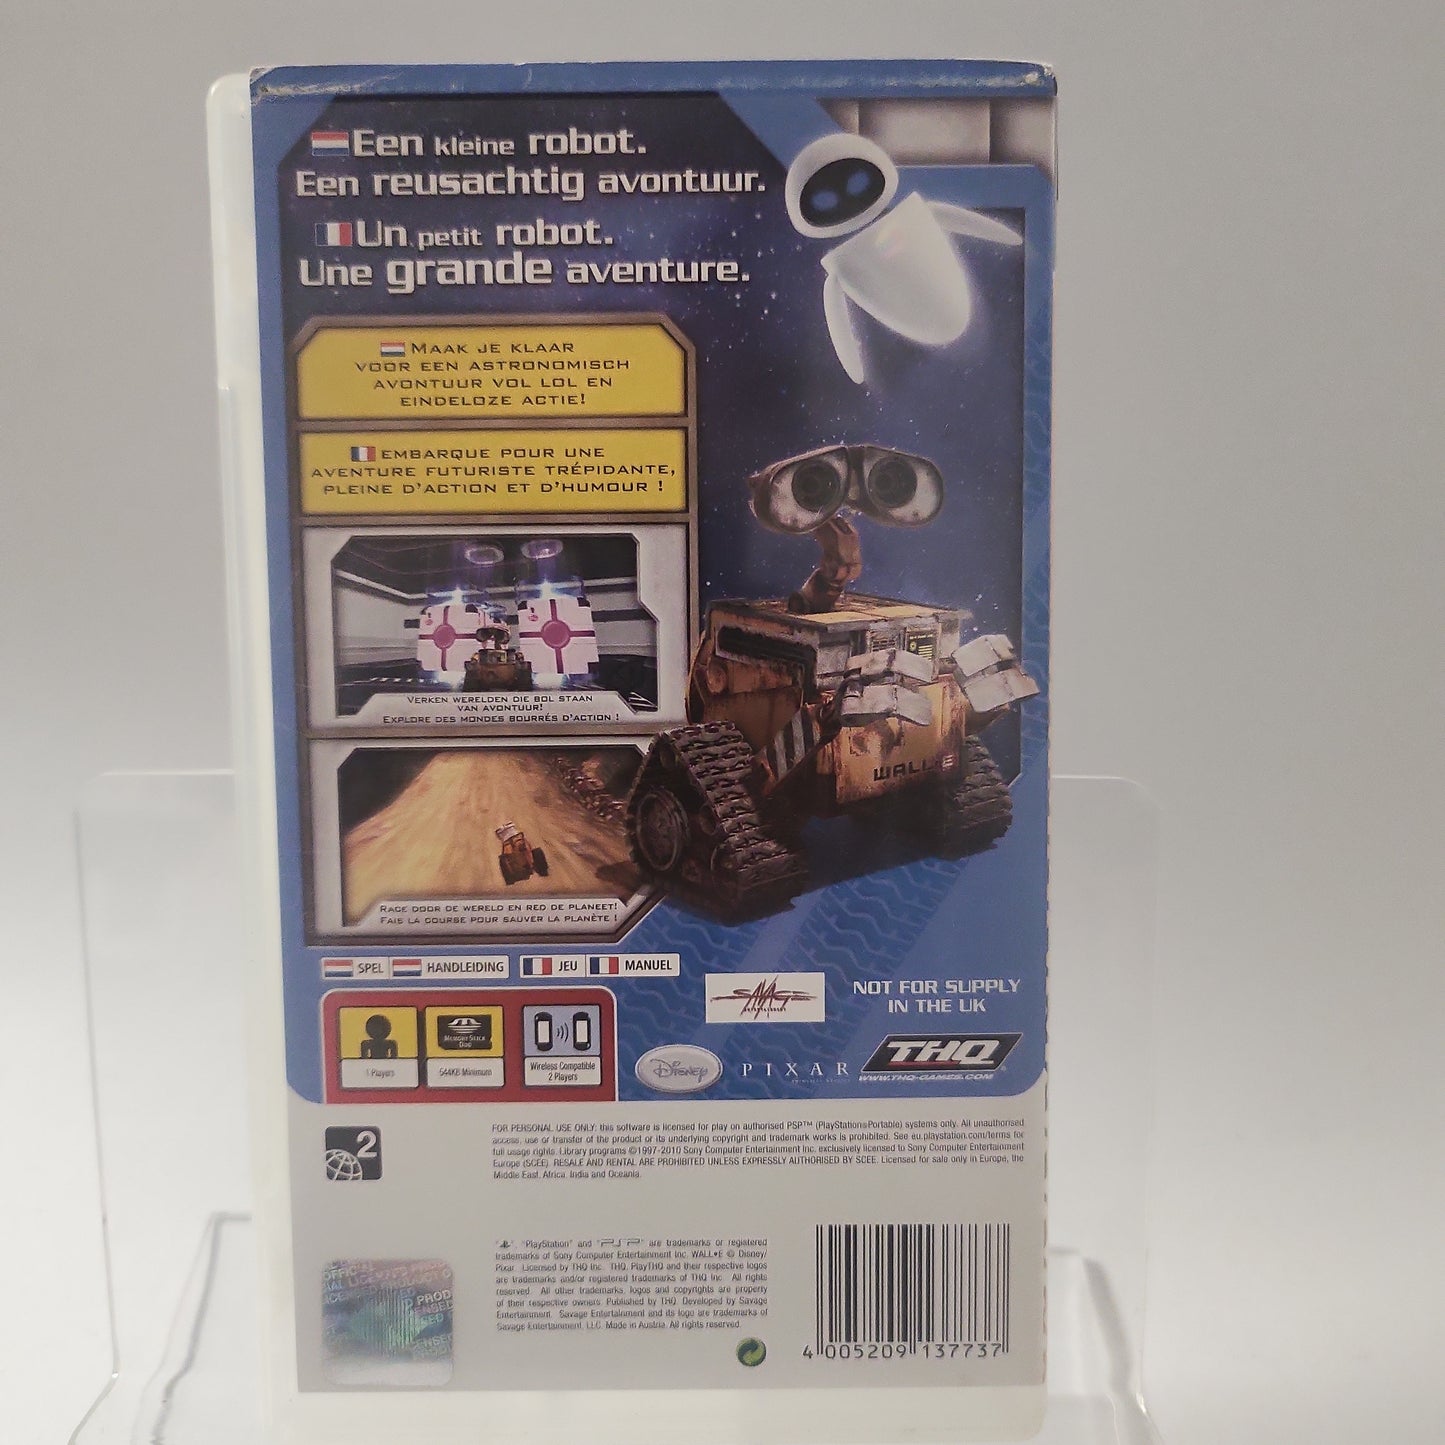 Disney Pixar Wall-E Essentials Playstation Portable